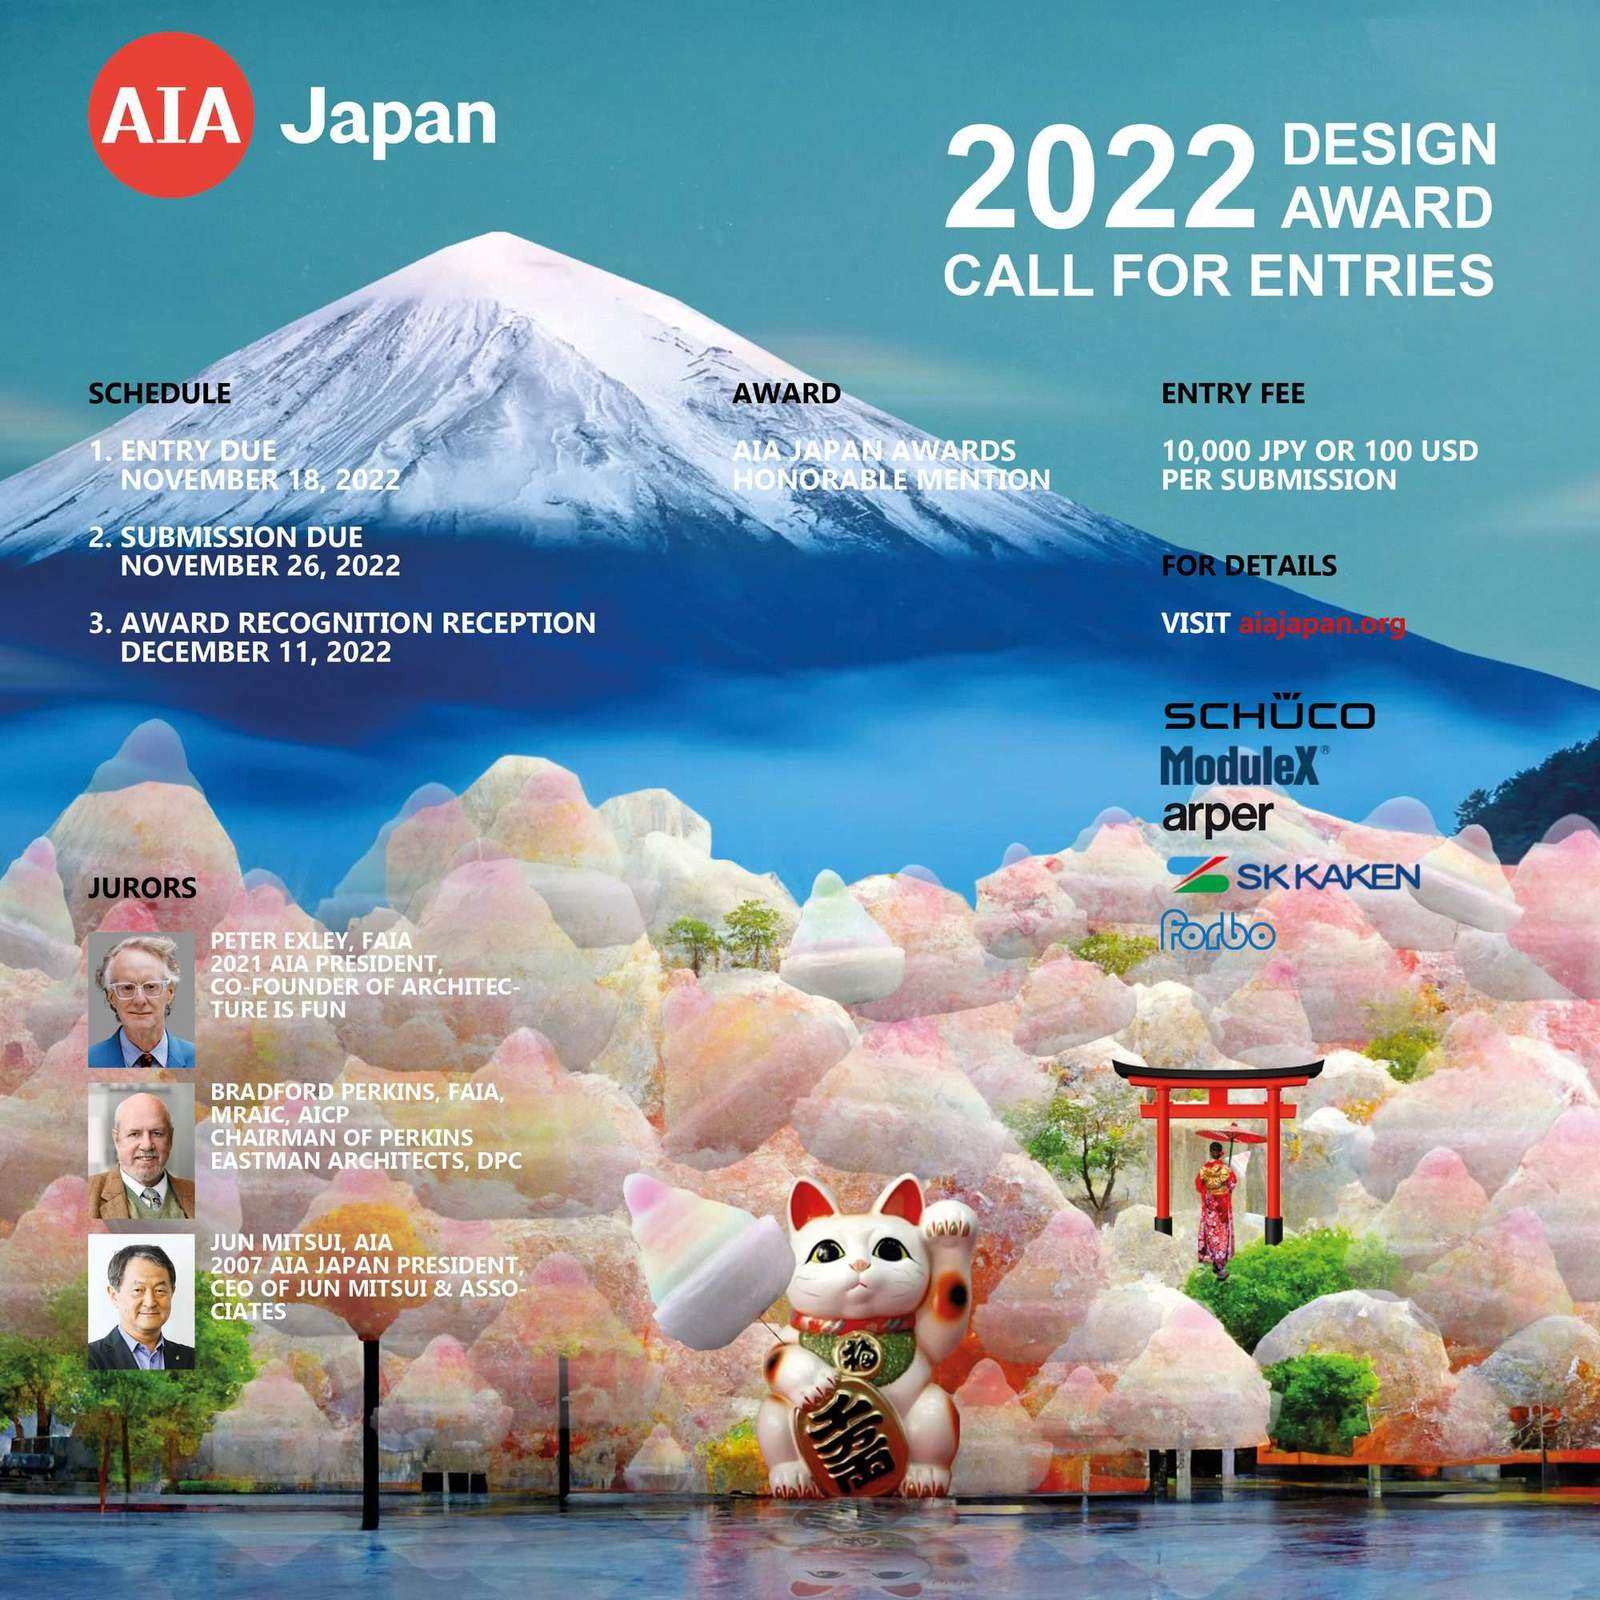 2022 AIA JAPAN DESIGN AWARDS